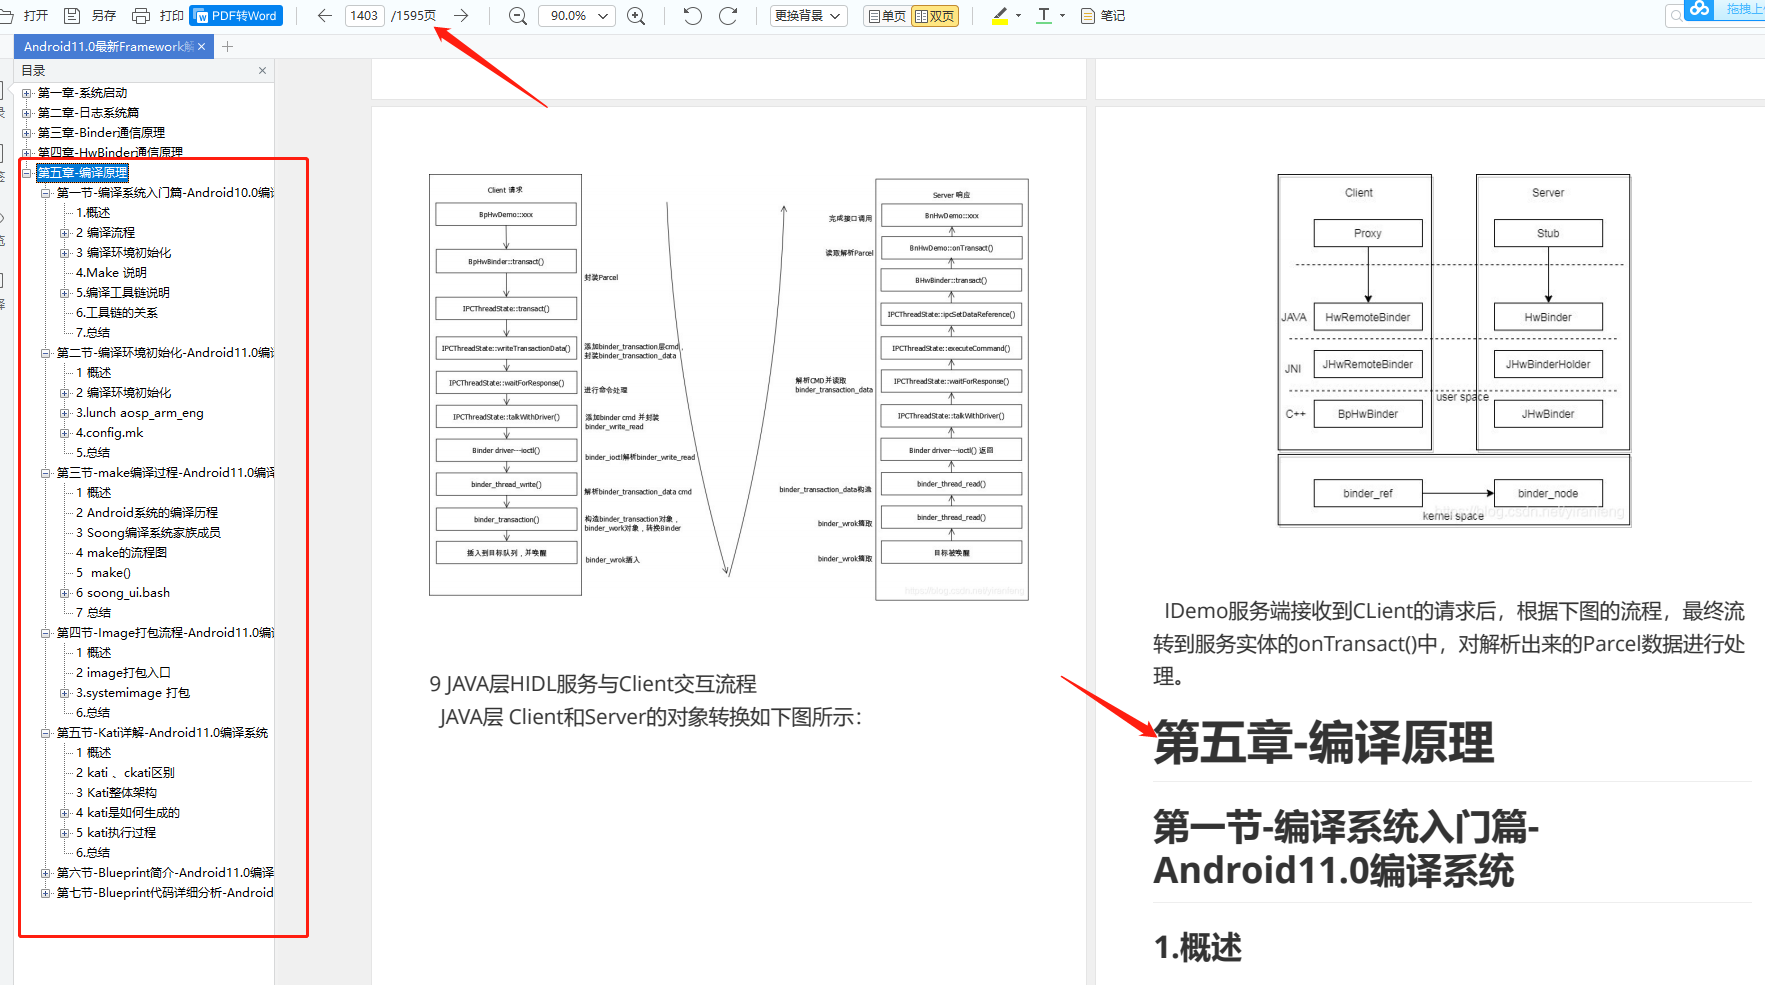 字节跳动总监封神之作《Android11.0最新Framework解析》，1595页，限时免费下载高清PDF文档_Android_04